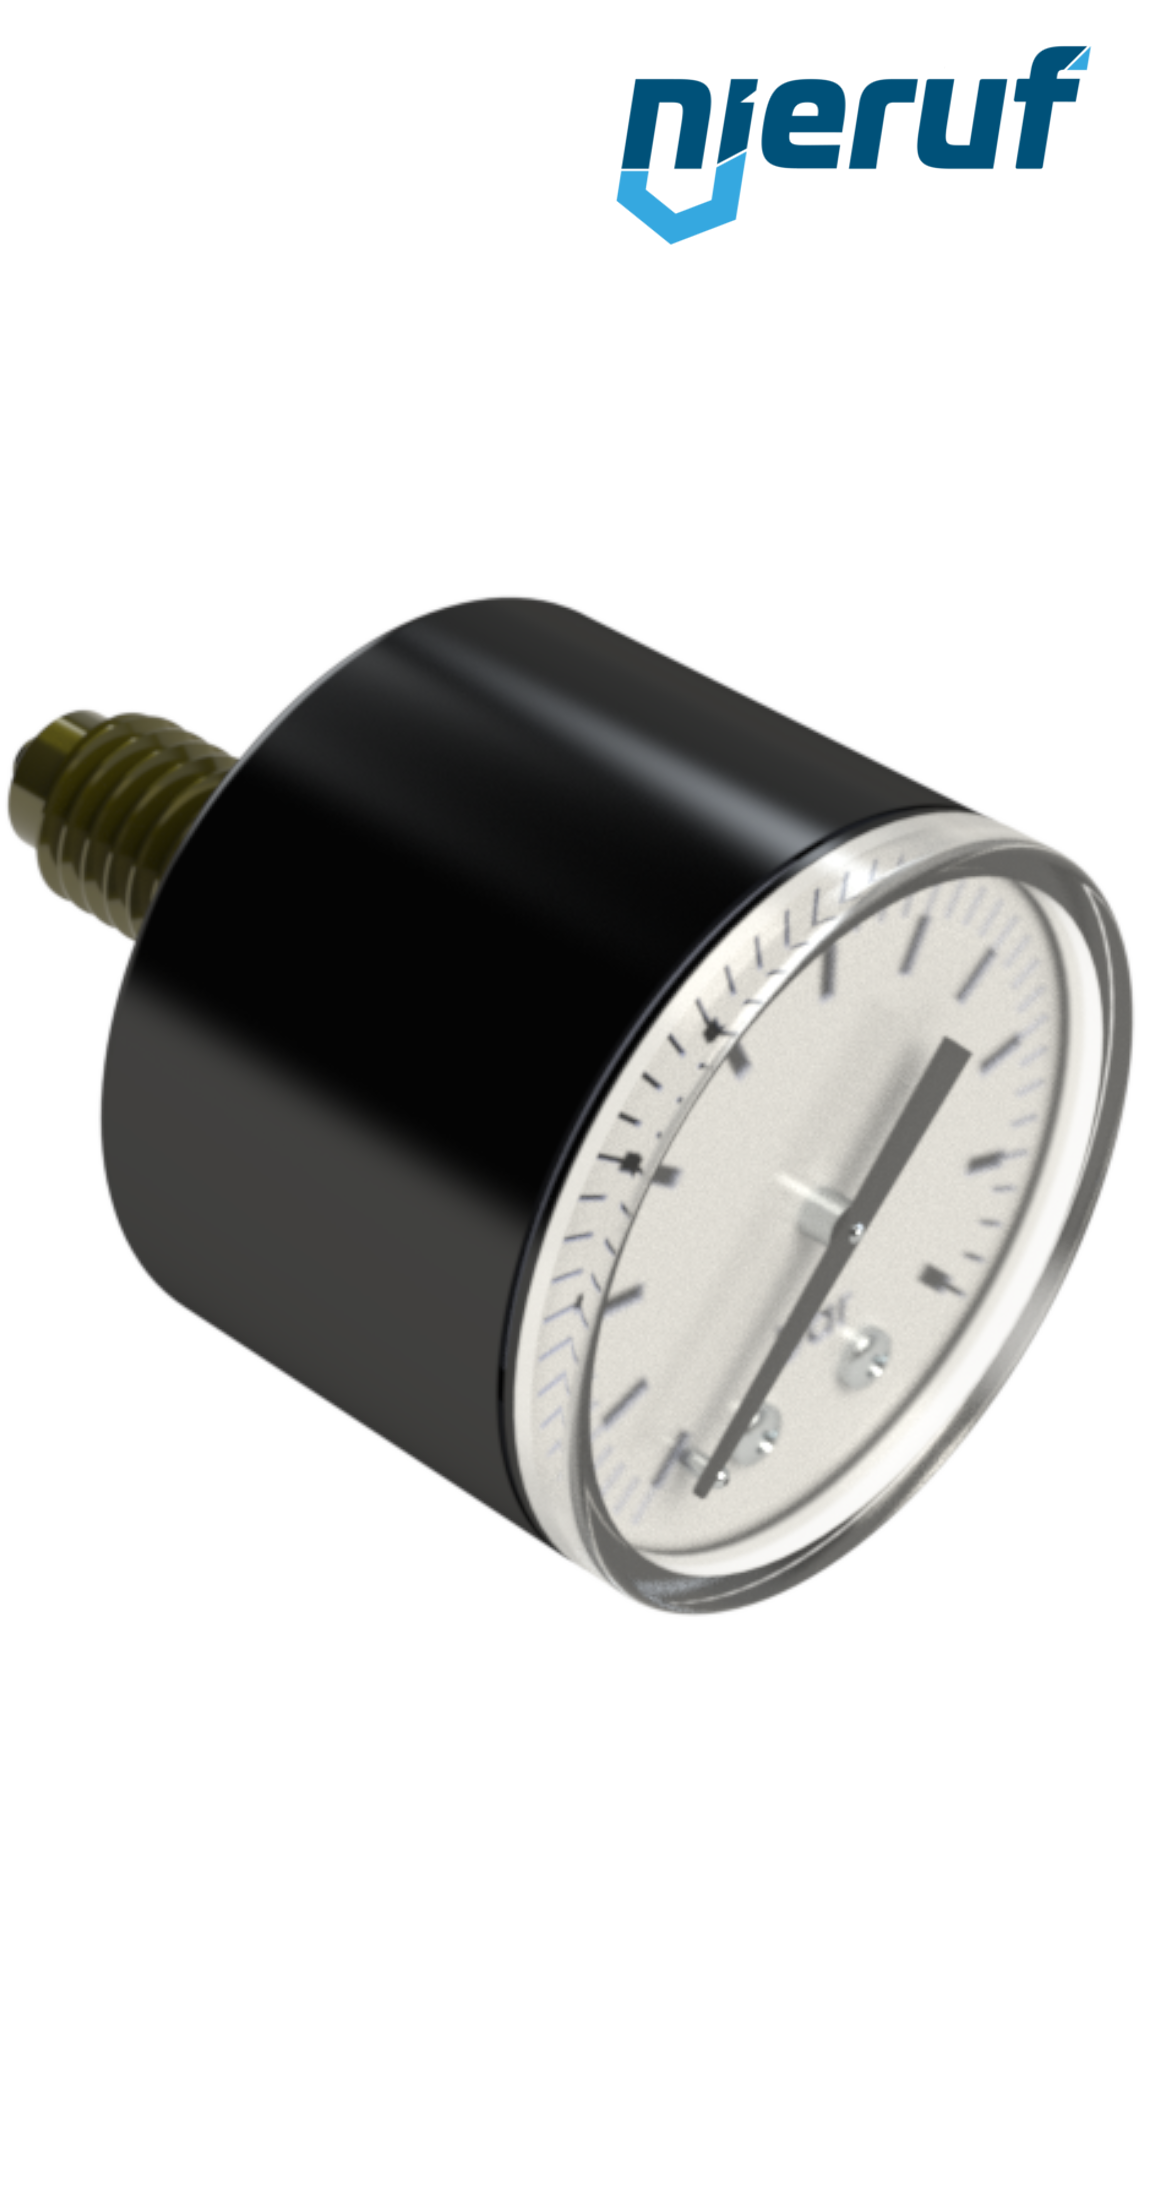 YATO Profi Wasserdruckmesser mit Manometer und Edelstahlschlauch